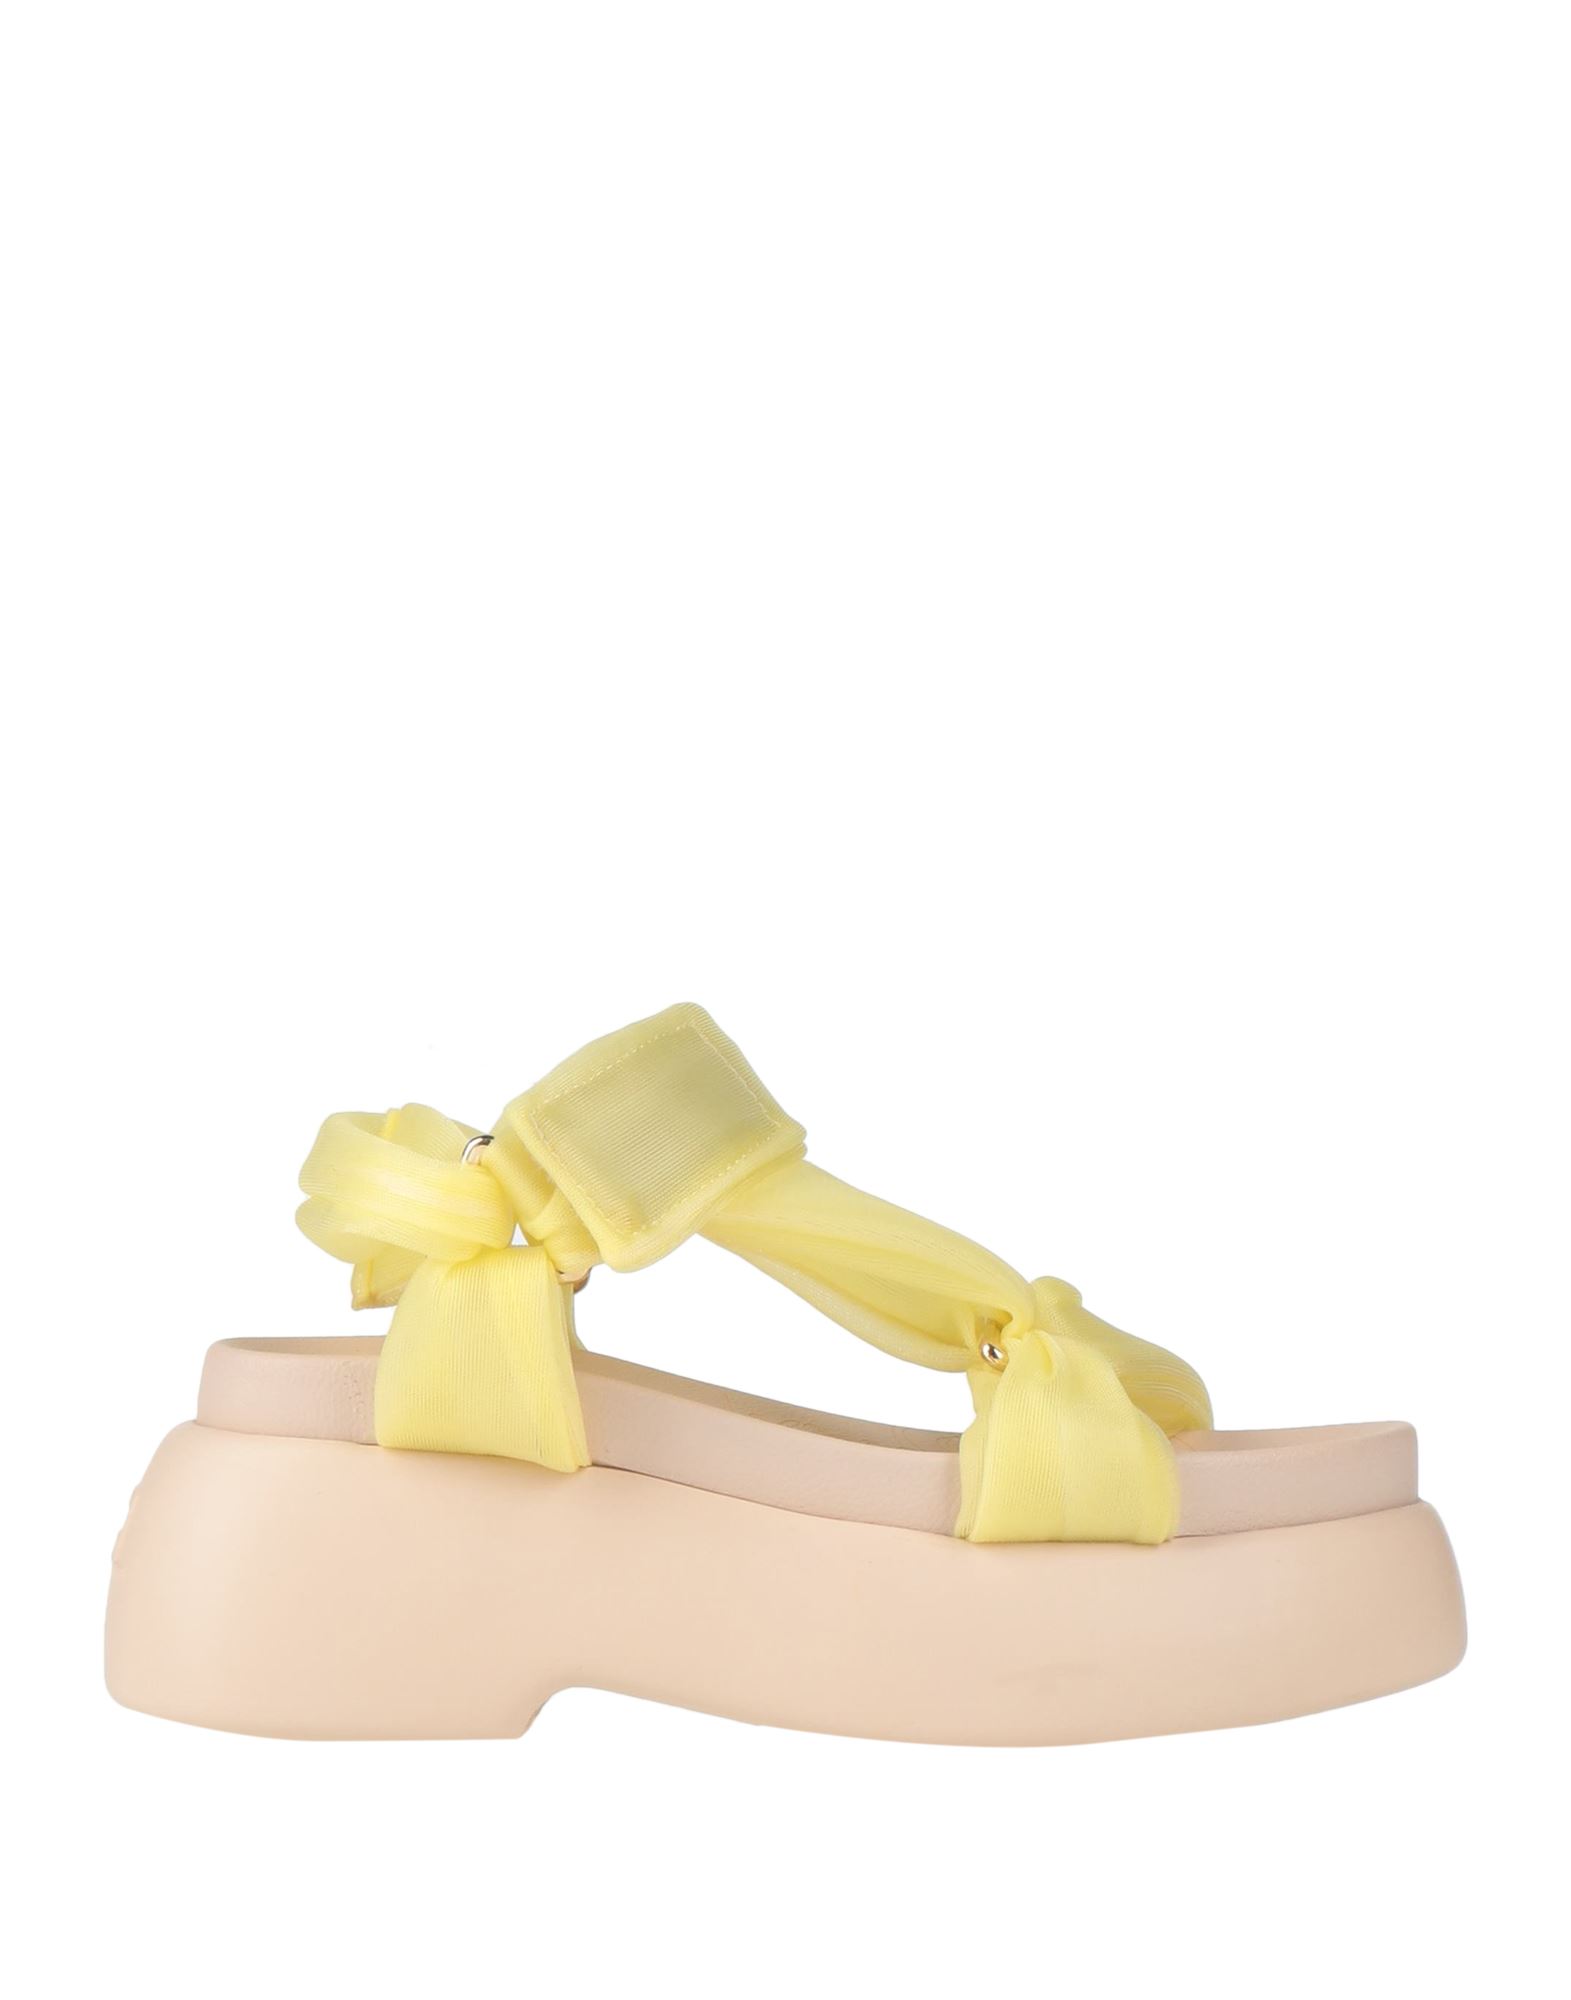 Agl Attilio Giusti Leombruni Sandals In Yellow